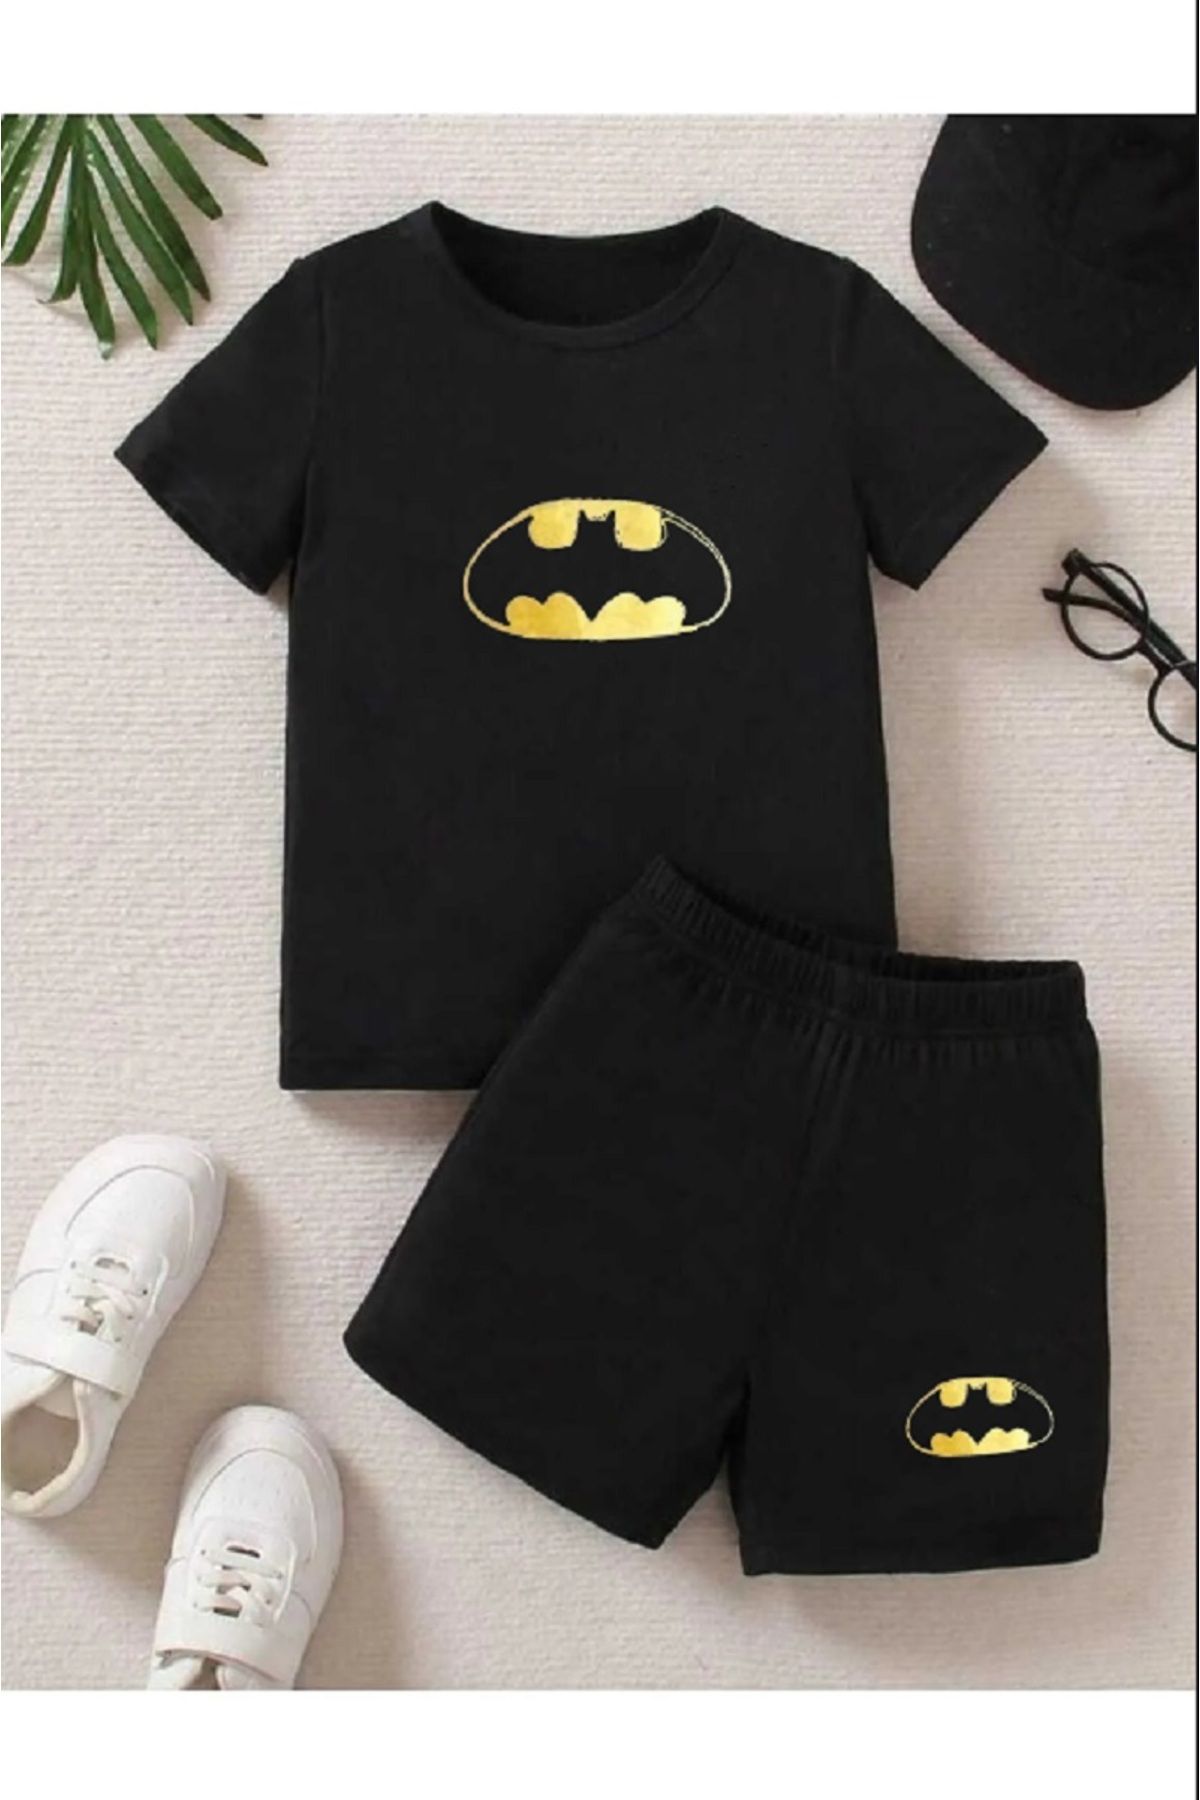 FRİENDS KİDS Kız/Erkek Çocuk  ''Batman'' Baskılı Tişört-Şort Takımı